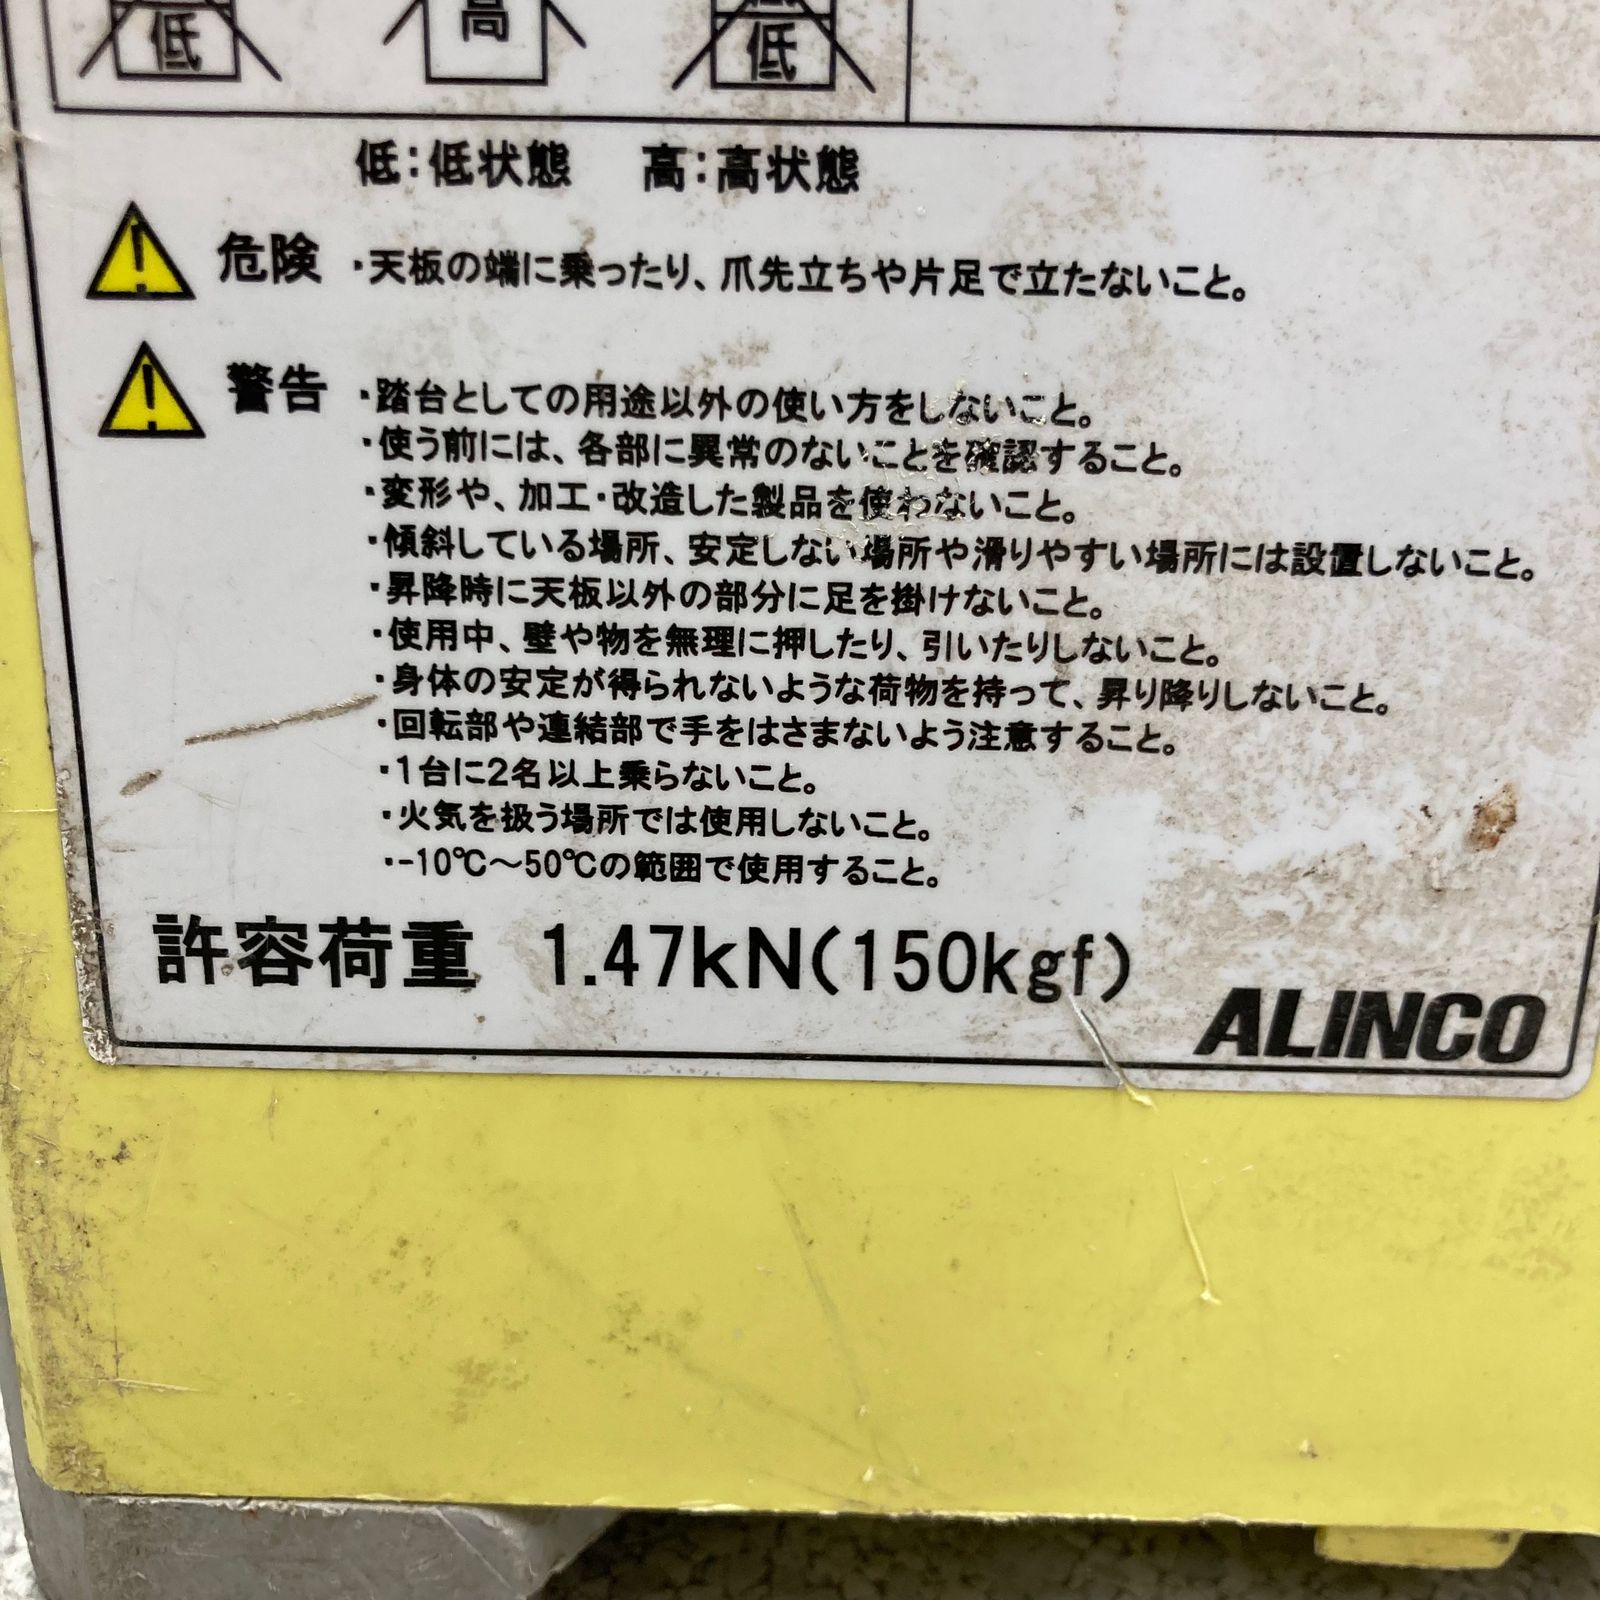 ALINCO/アルインコステップキューブ 樹脂製作業台 SC 中古現状品